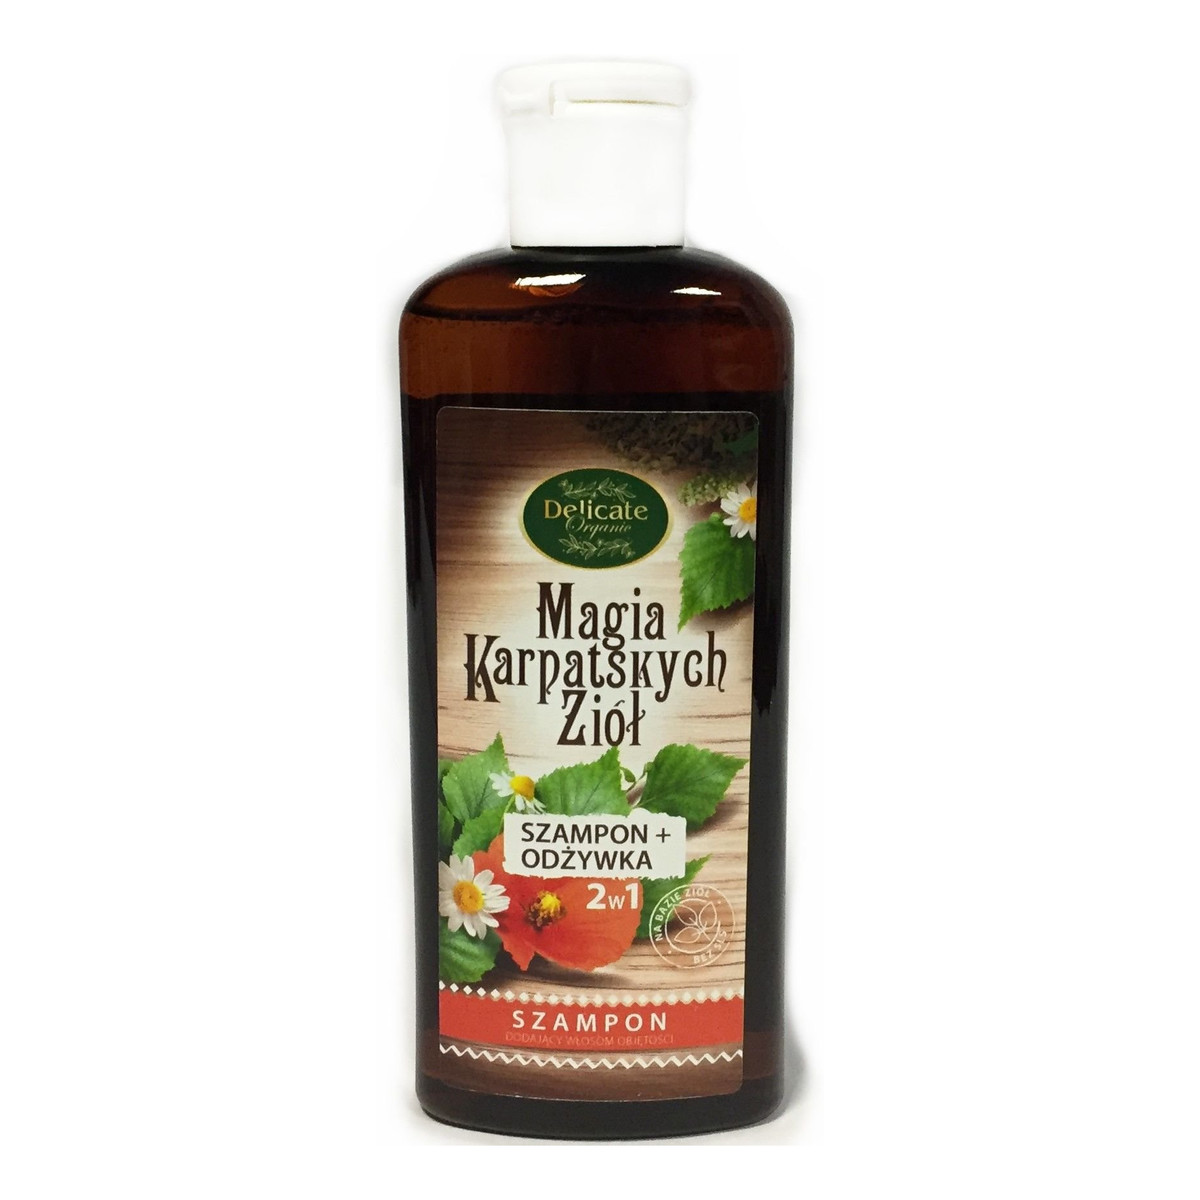 Delicate Organic Magia Karpackich Ziół szampon dodający objętości 250g